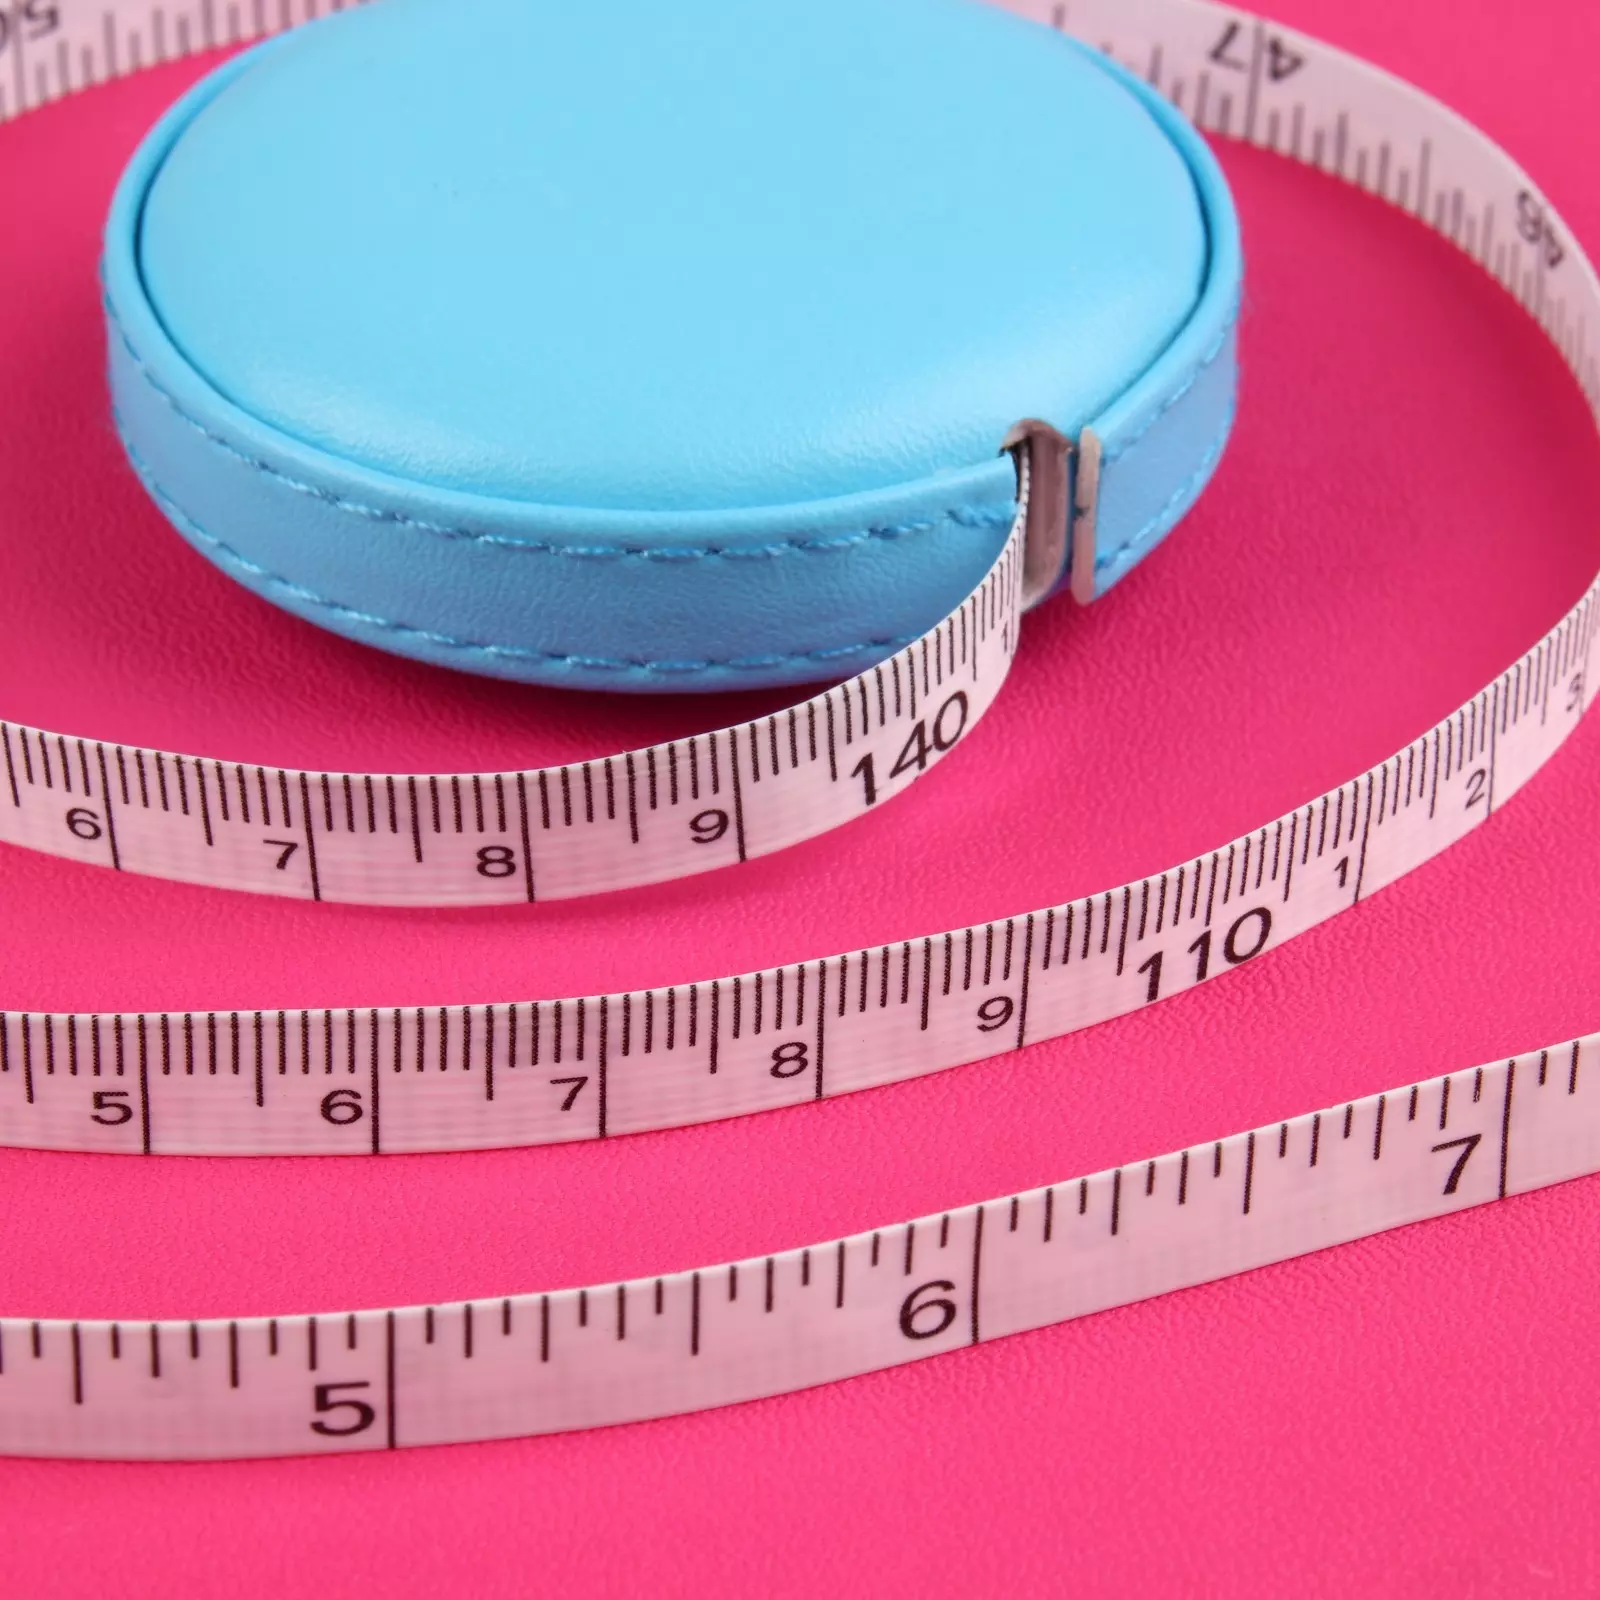 Сантиметровая лента-рулетка портновская, искусственная кожа, 150 см (см/дюймы), цвет голубой